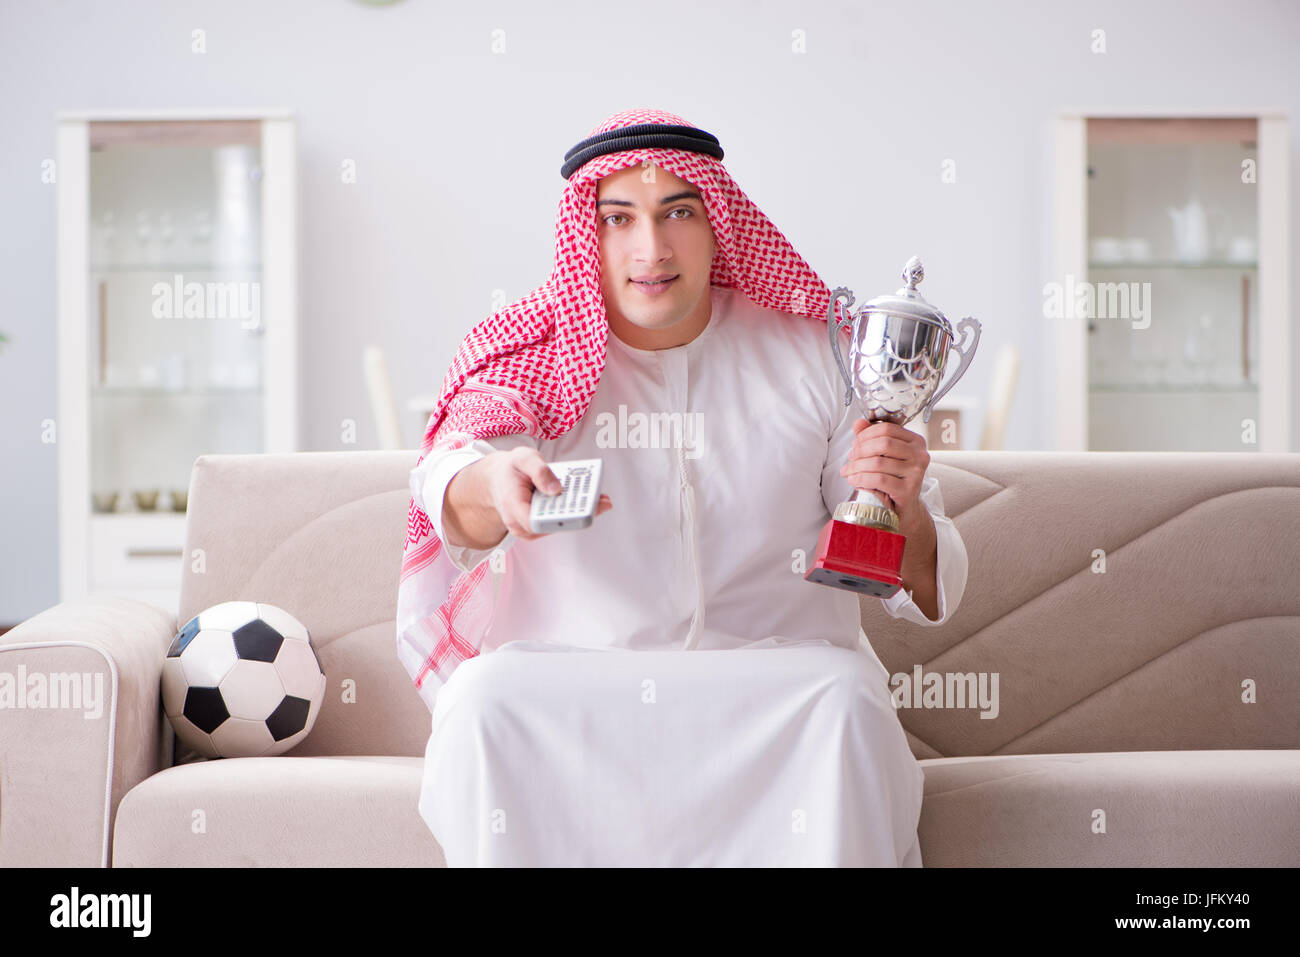 Junge arabische Mann auf Sofa Fußball gucken Stockfotografie - Alamy